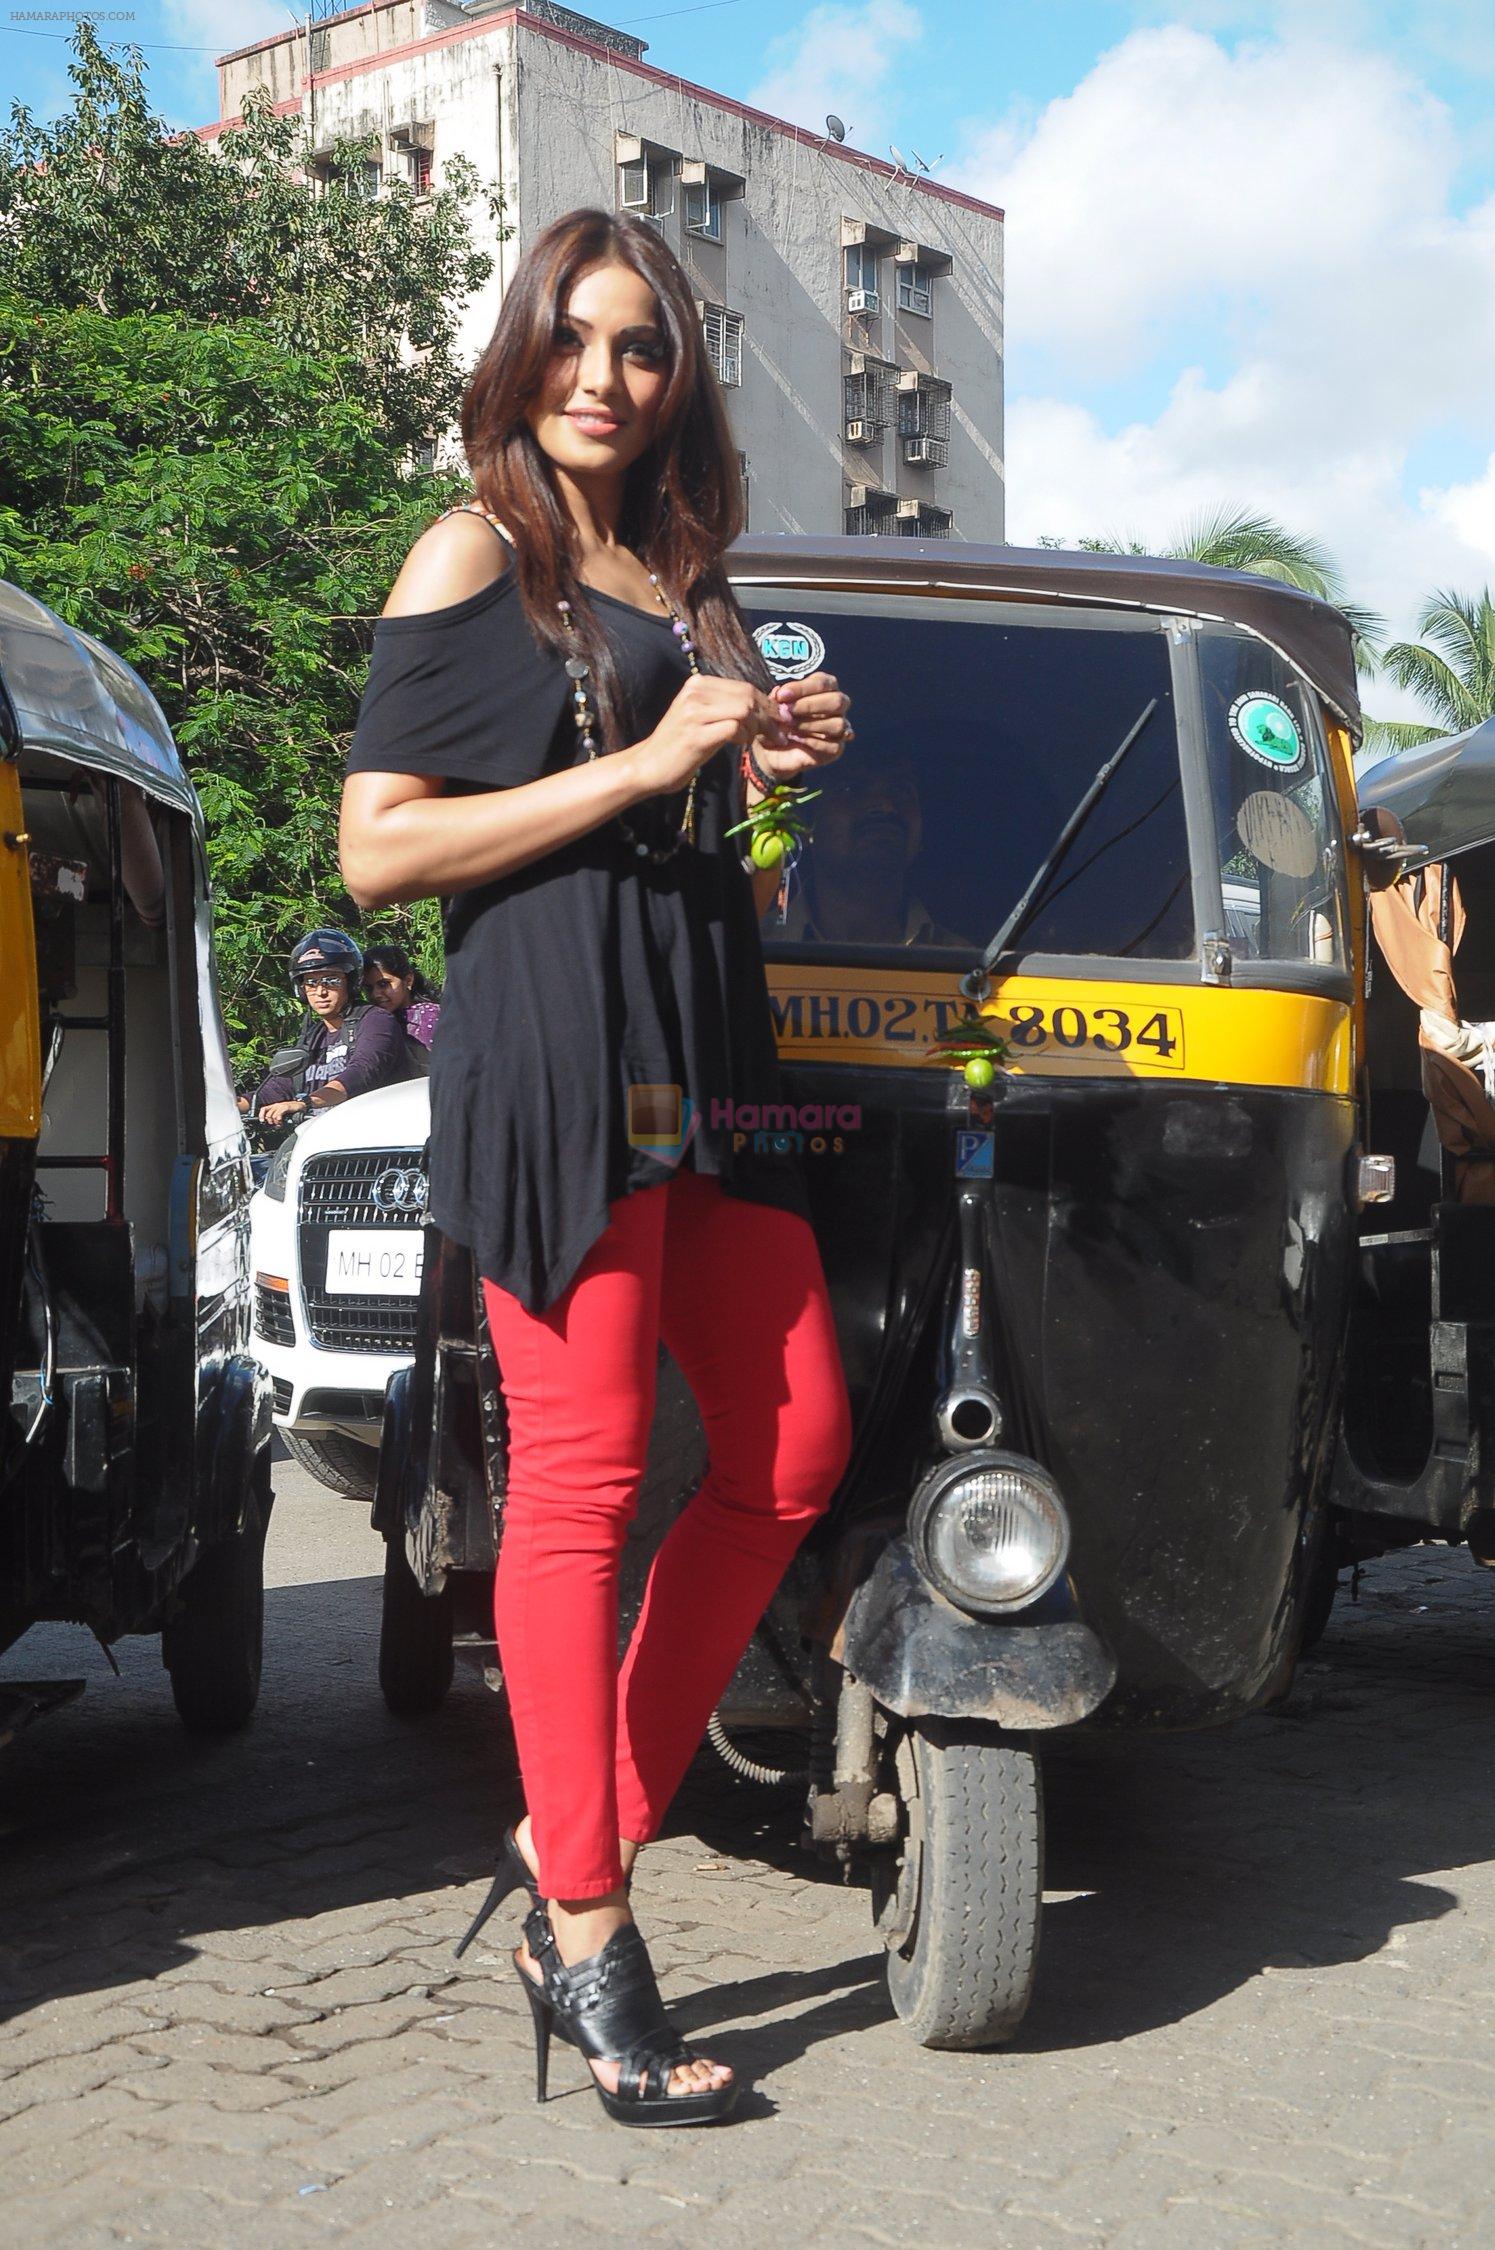 Bipasha Basu promotes Raaz 3 on a traffic signal by distributing lemon to wade away evil spirits in Mumbai on 1st Sept 2012